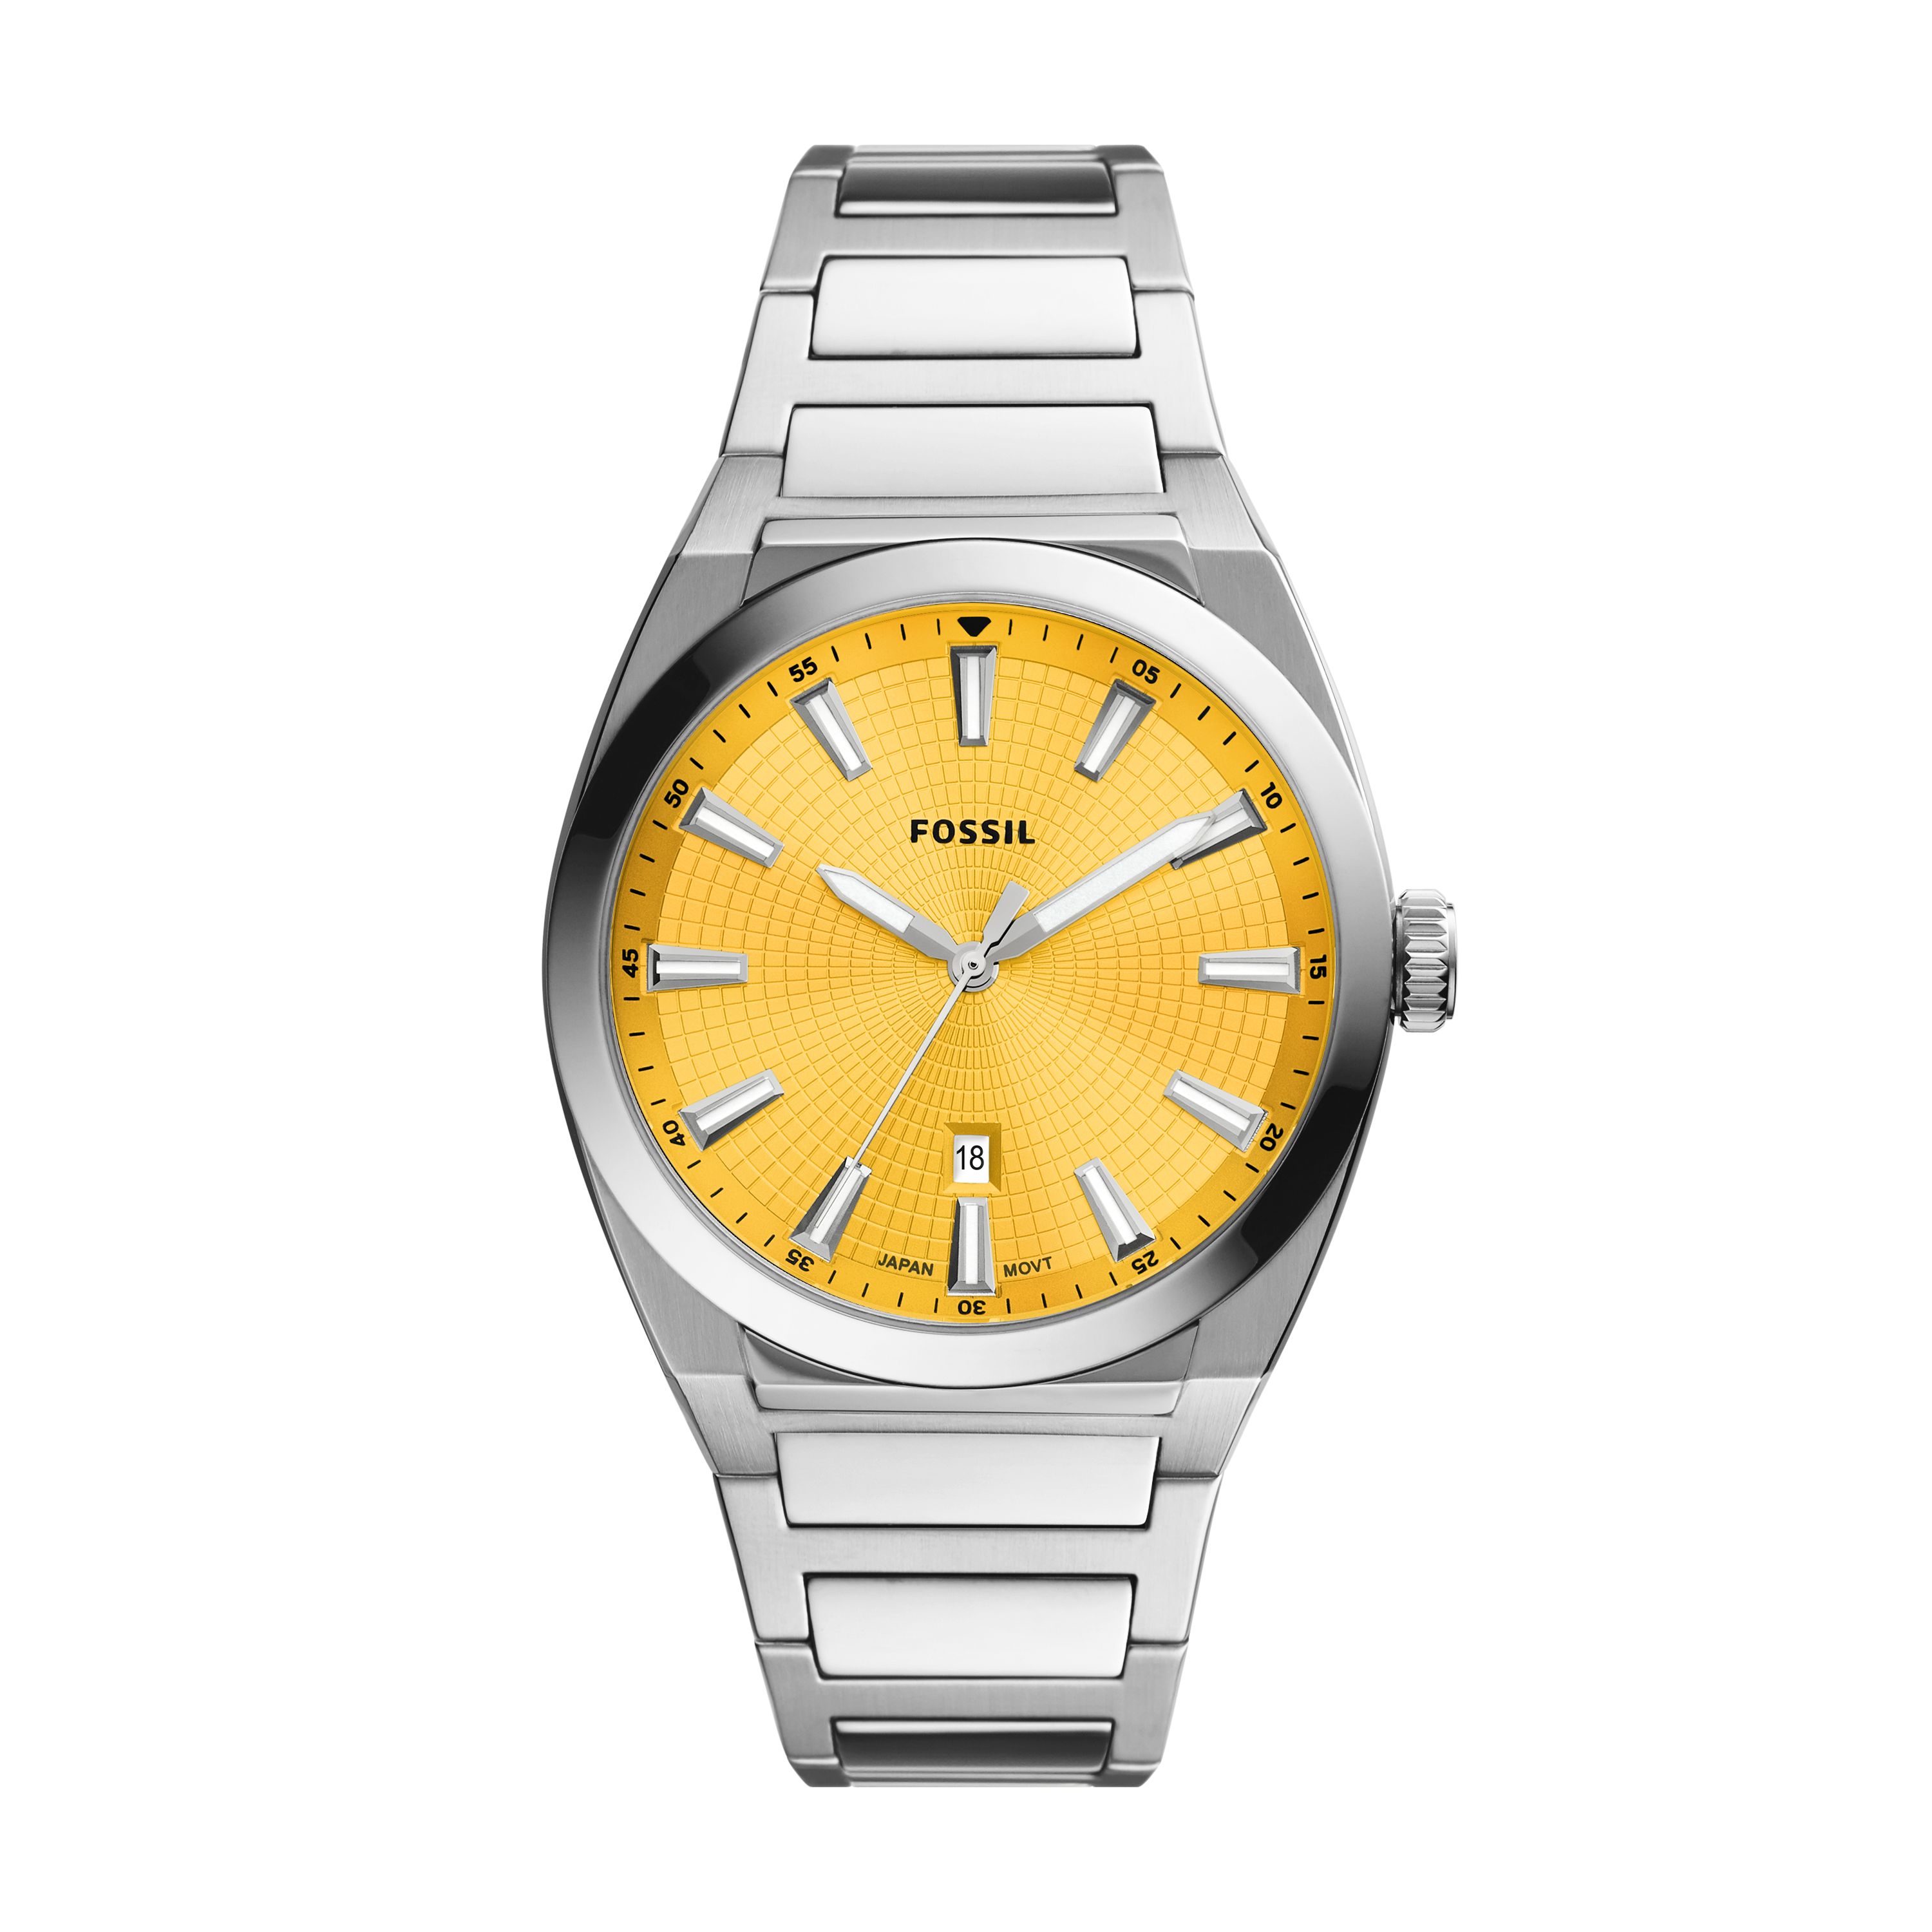 Emporio Armani, Fossil, Gq ve Guess yeni saat modelleri ile dikkatleri çekiyor